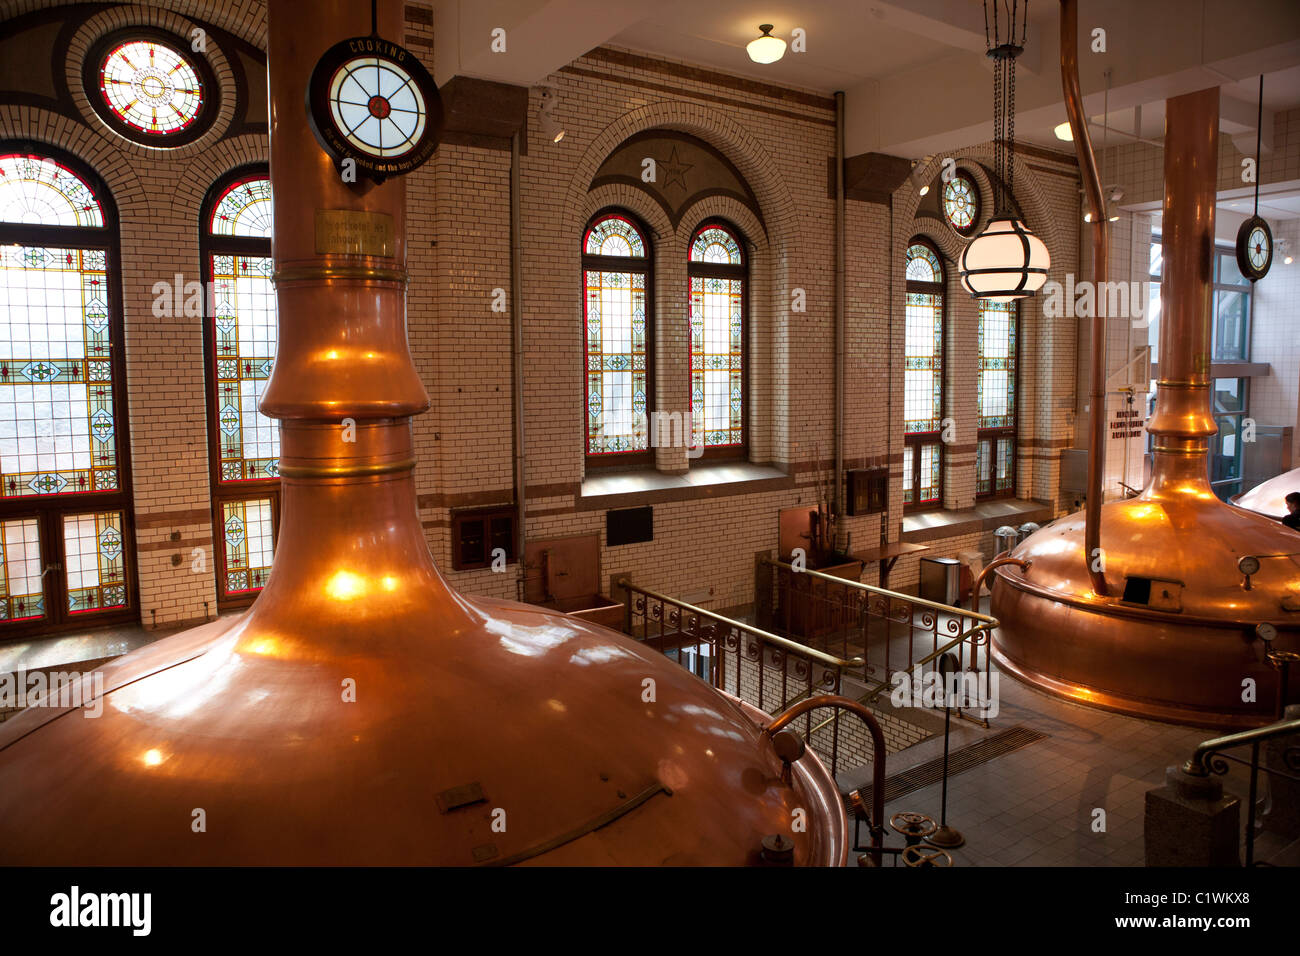 Übersicht über Bier Produktion Bottiche in historischen Heineken-Brauerei, Amsterdam, Niederlande. Stockfoto